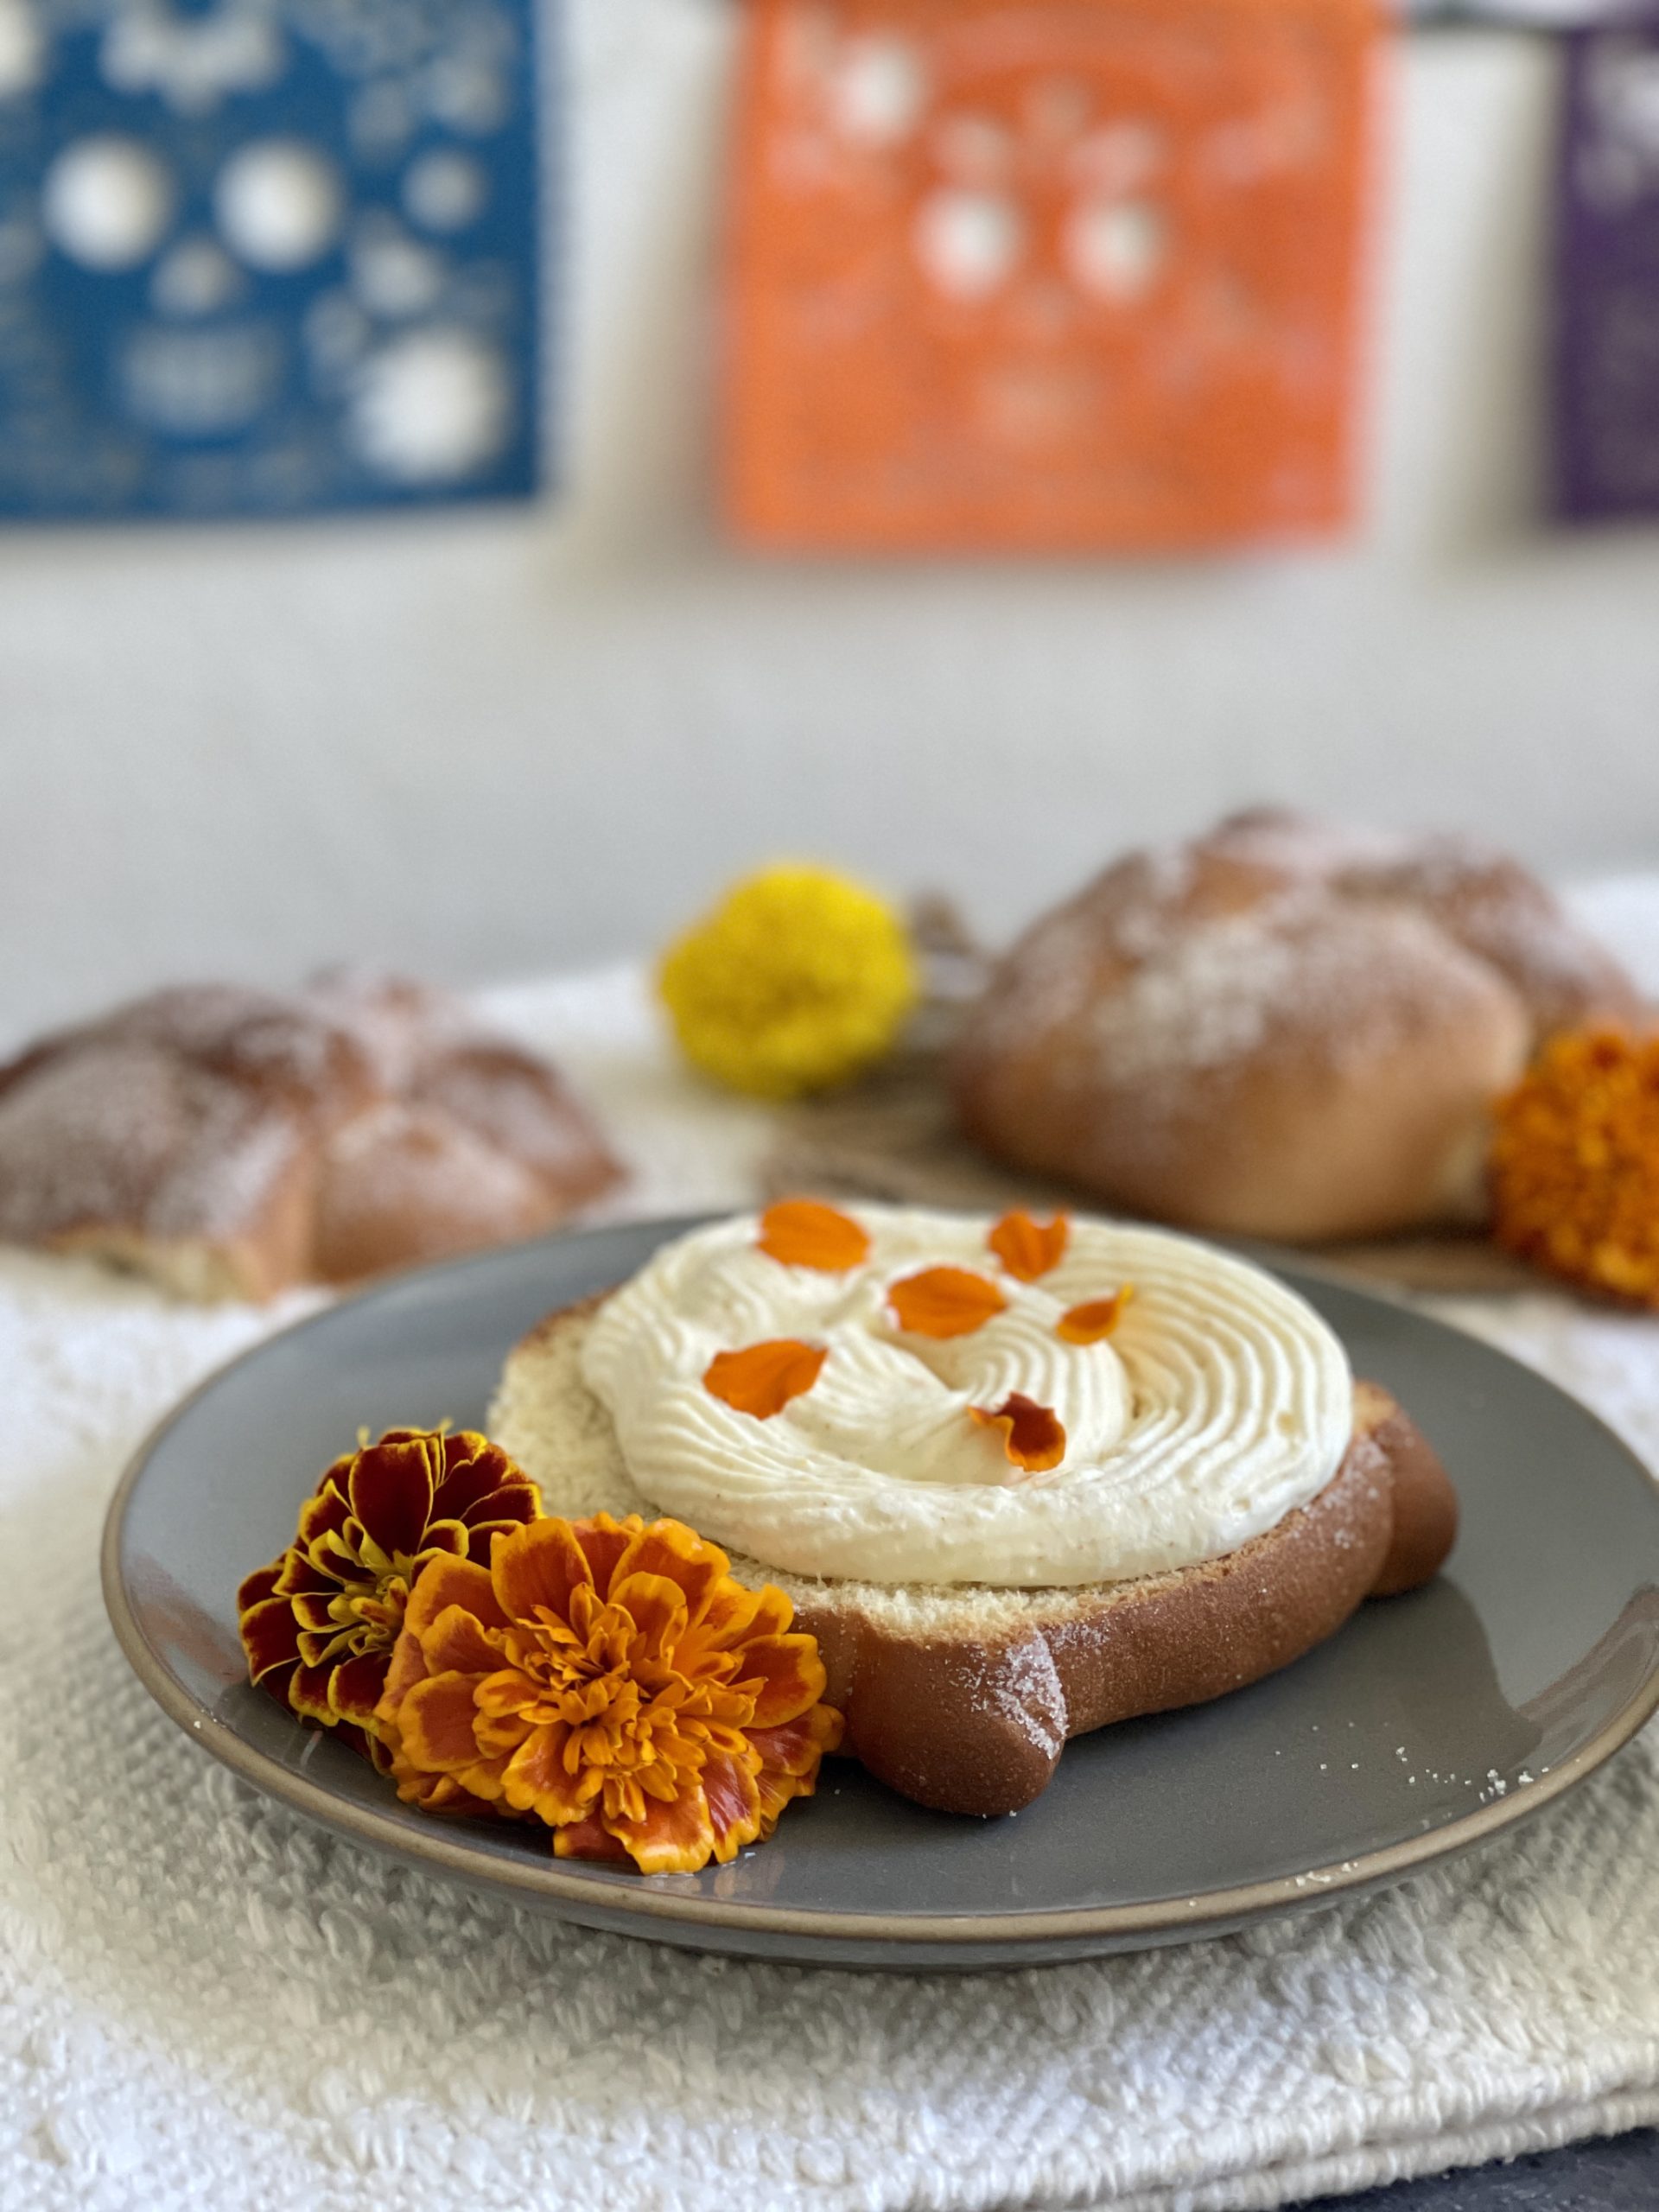 Pan de muerto stuffed with marigold cream